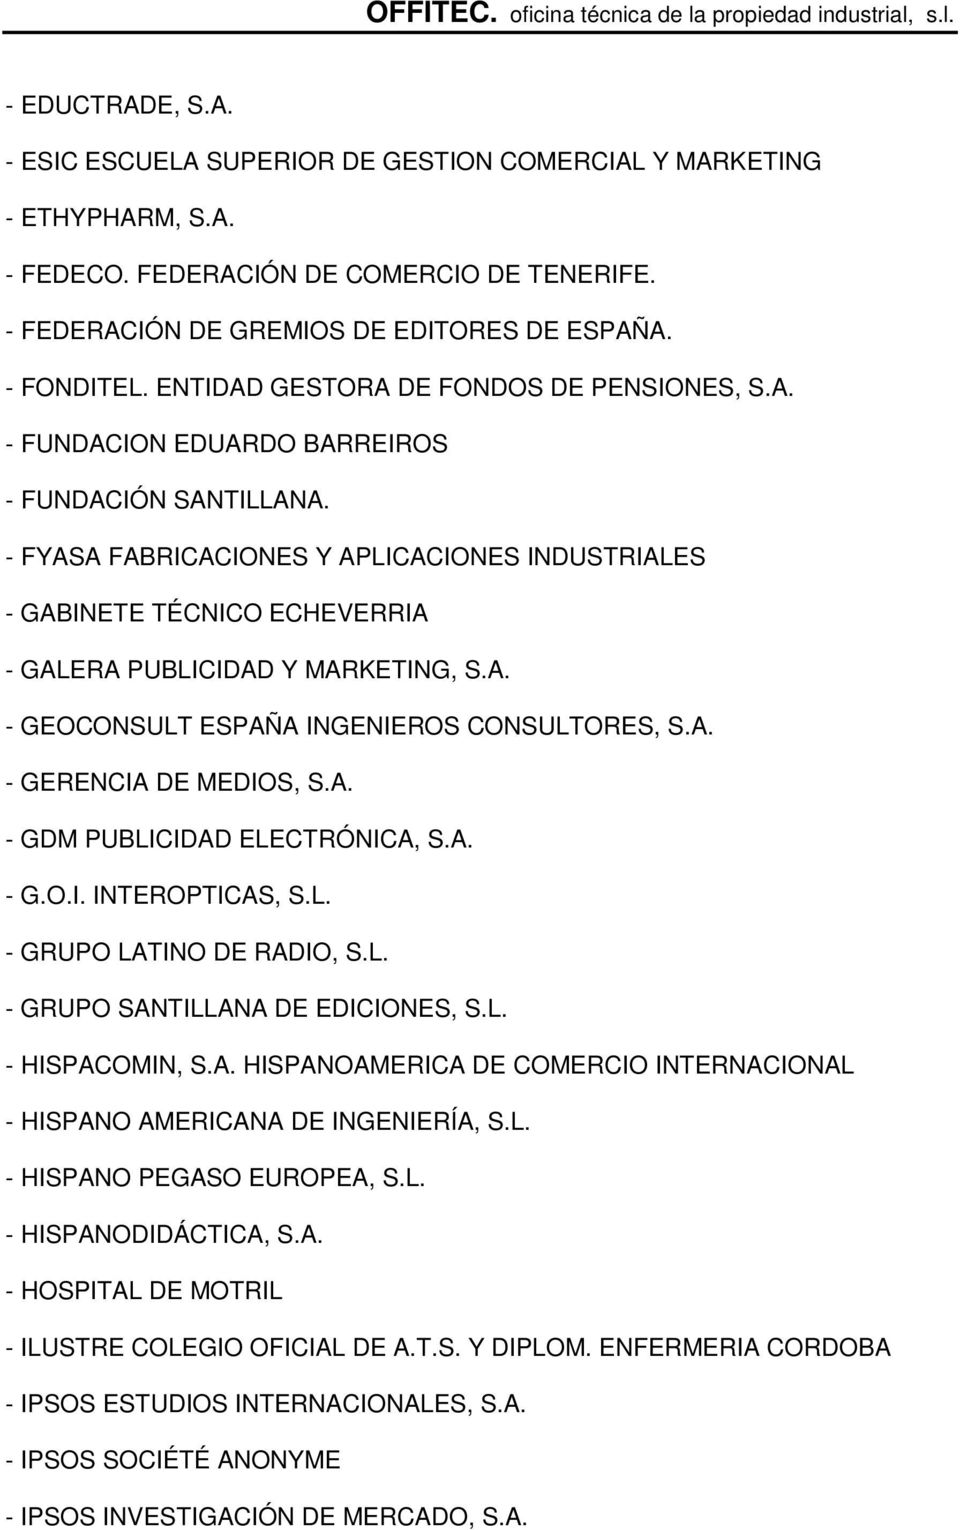 - FYASA FABRICACIONES Y APLICACIONES INDUSTRIALES - GABINETE TÉCNICO ECHEVERRIA - GALERA PUBLICIDAD Y MARKETING, S.A. - GEOCONSULT ESPAÑA INGENIEROS CONSULTORES, S.A. - GERENCIA DE MEDIOS, S.A. - GDM PUBLICIDAD ELECTRÓNICA, S.